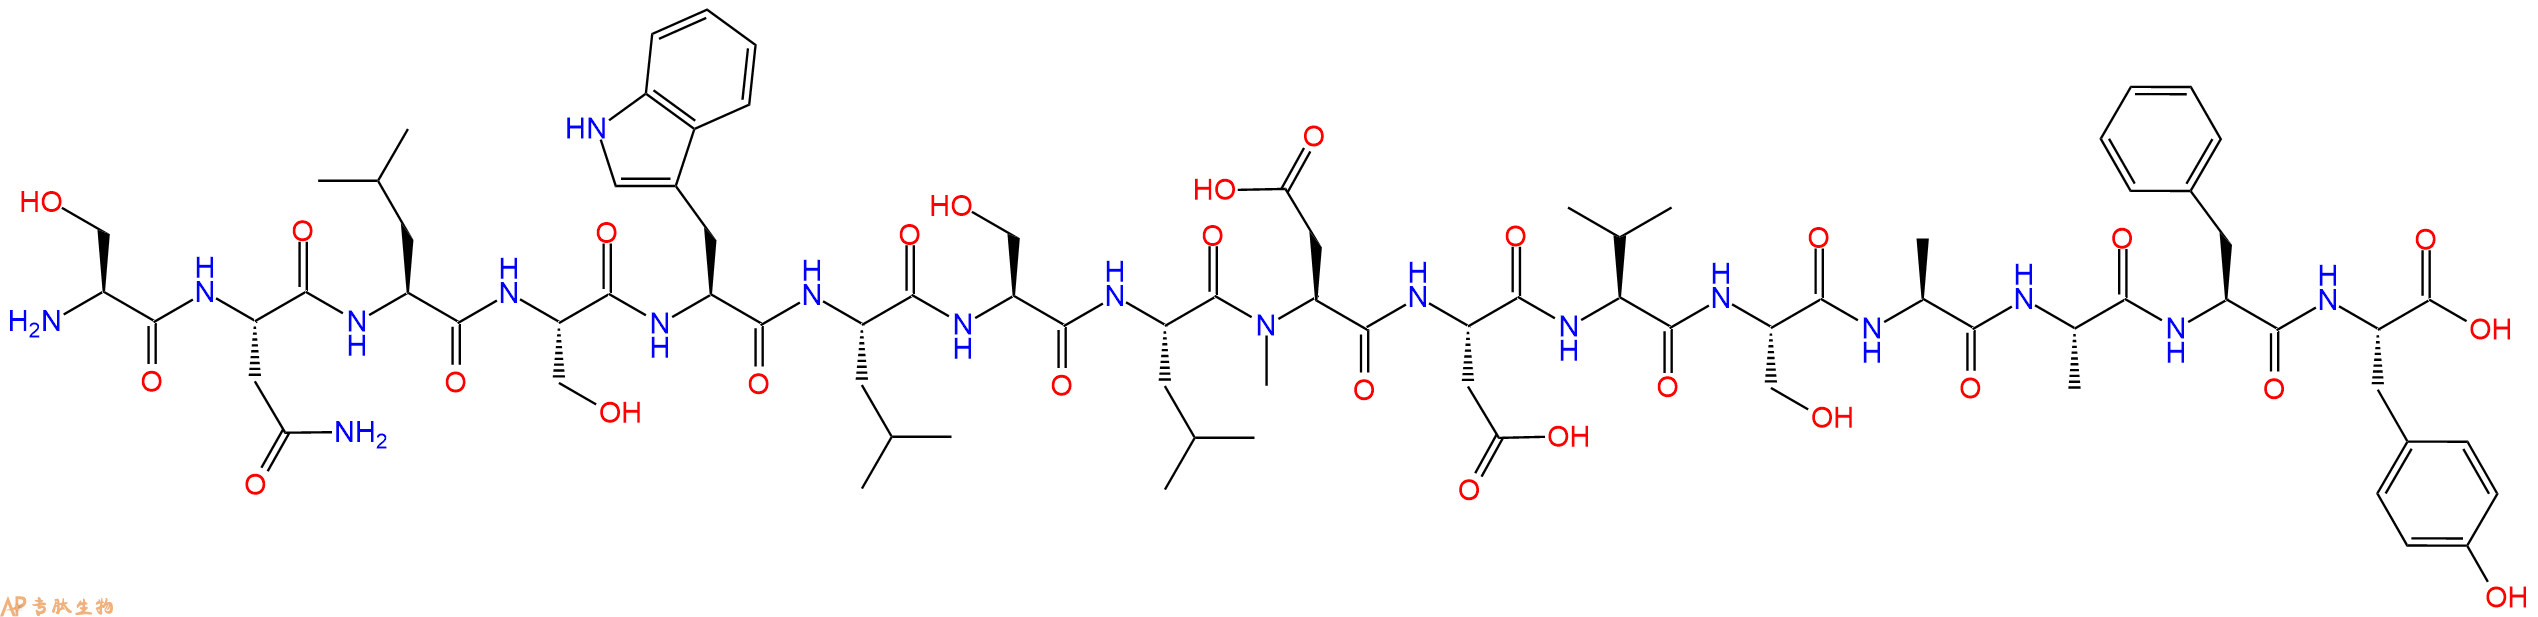 专肽生物产品H2N-Ser-Asn-Leu-Ser-Trp-Leu-Ser-Leu-(NMe)Asp-Asp-V